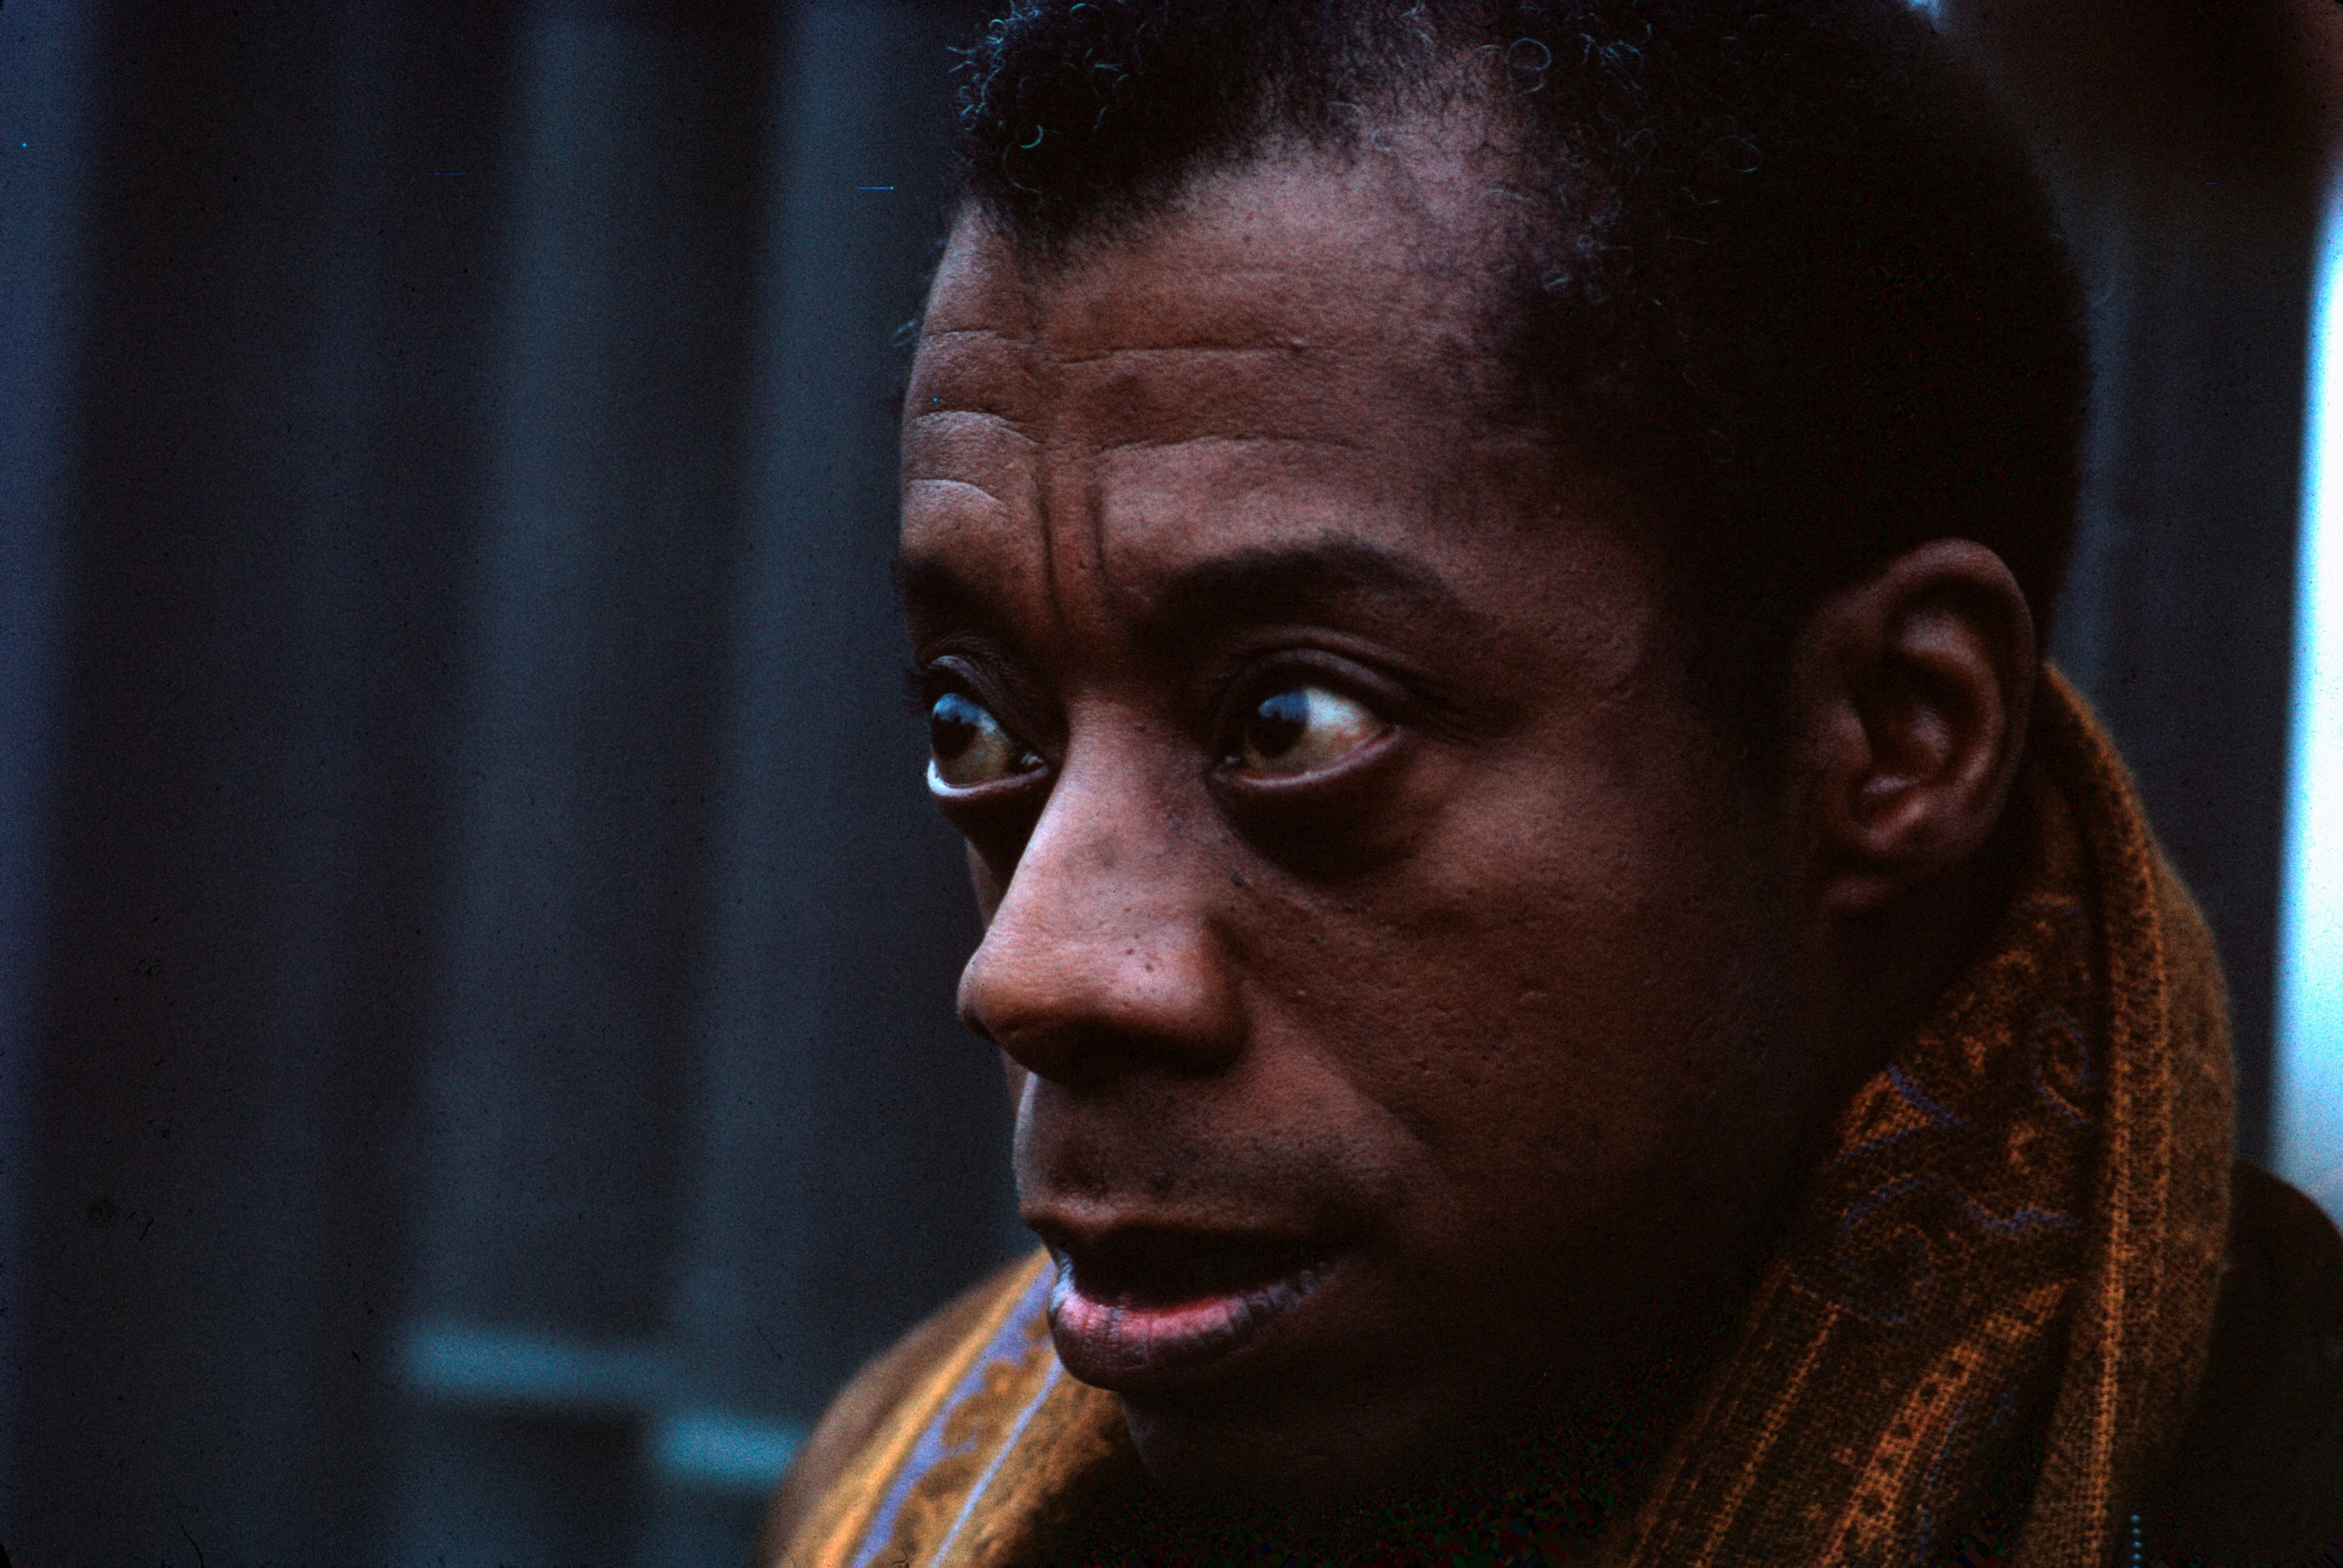 A close up colour photograph of writer James Baldwin